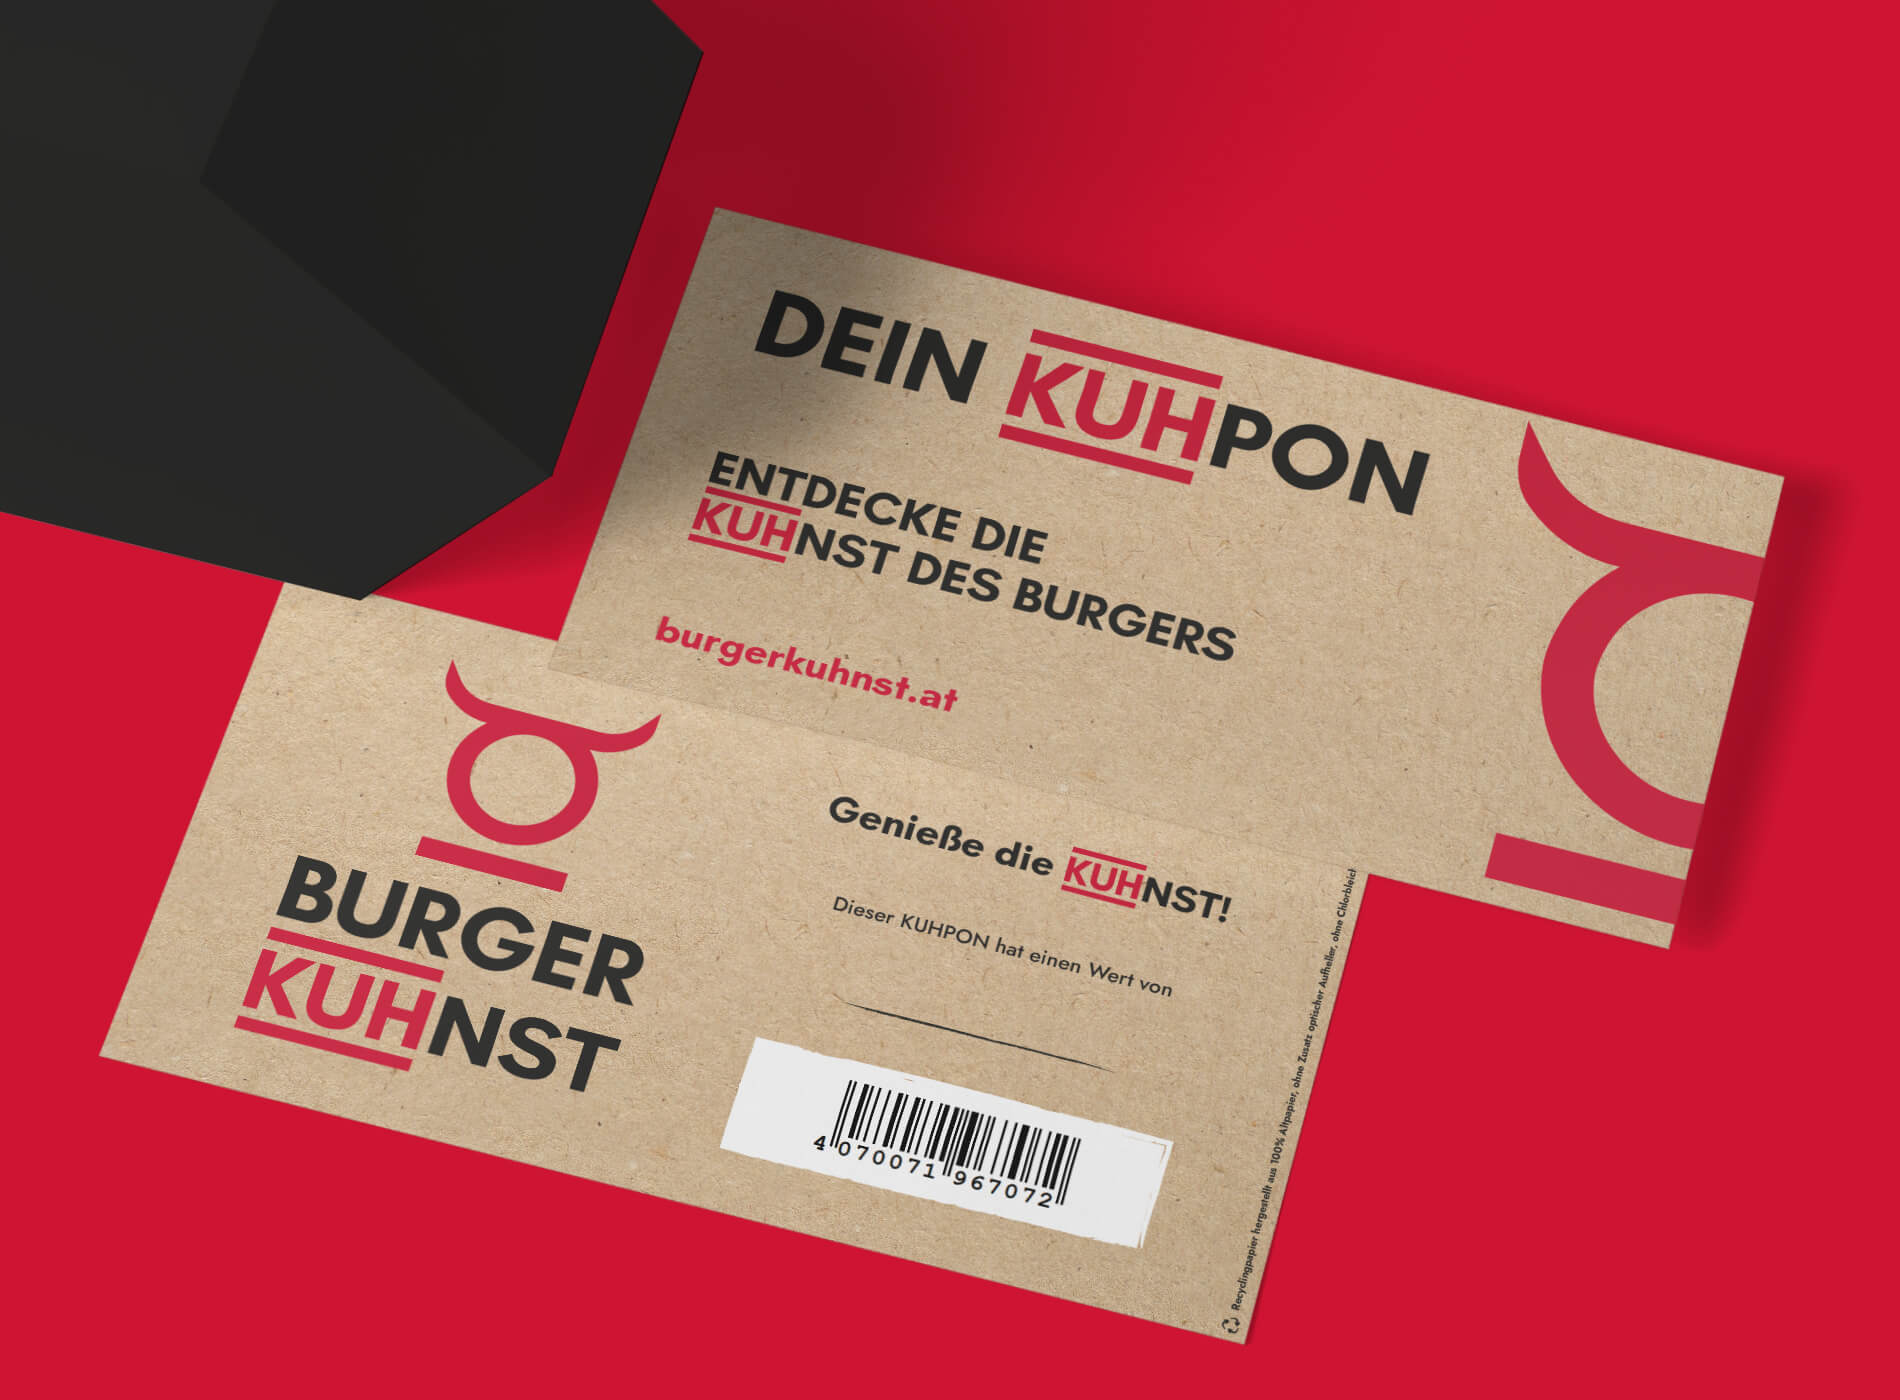 Burger Kuhnst Coupon Grafikdesign